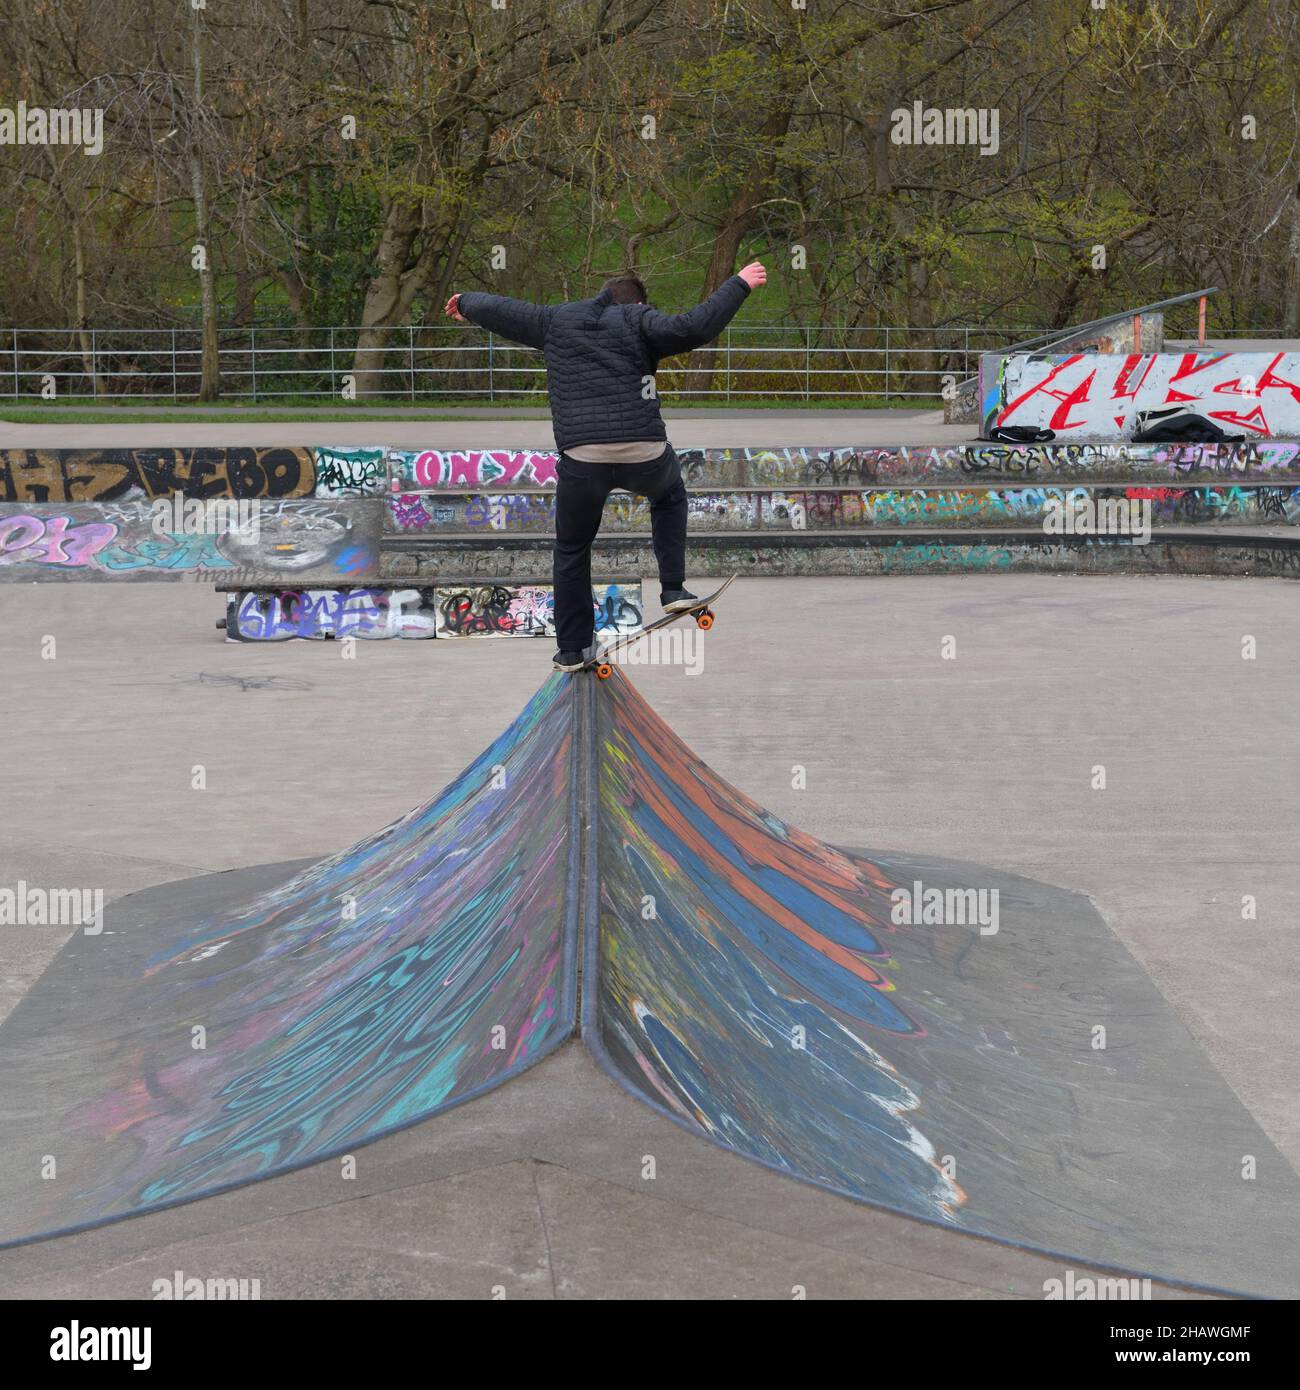 Adolescente demostrando su habilidad en un skateboard en el parque de skateboard de Kelvingrove, Glasgow, Escocia, Reino Unido Foto de stock